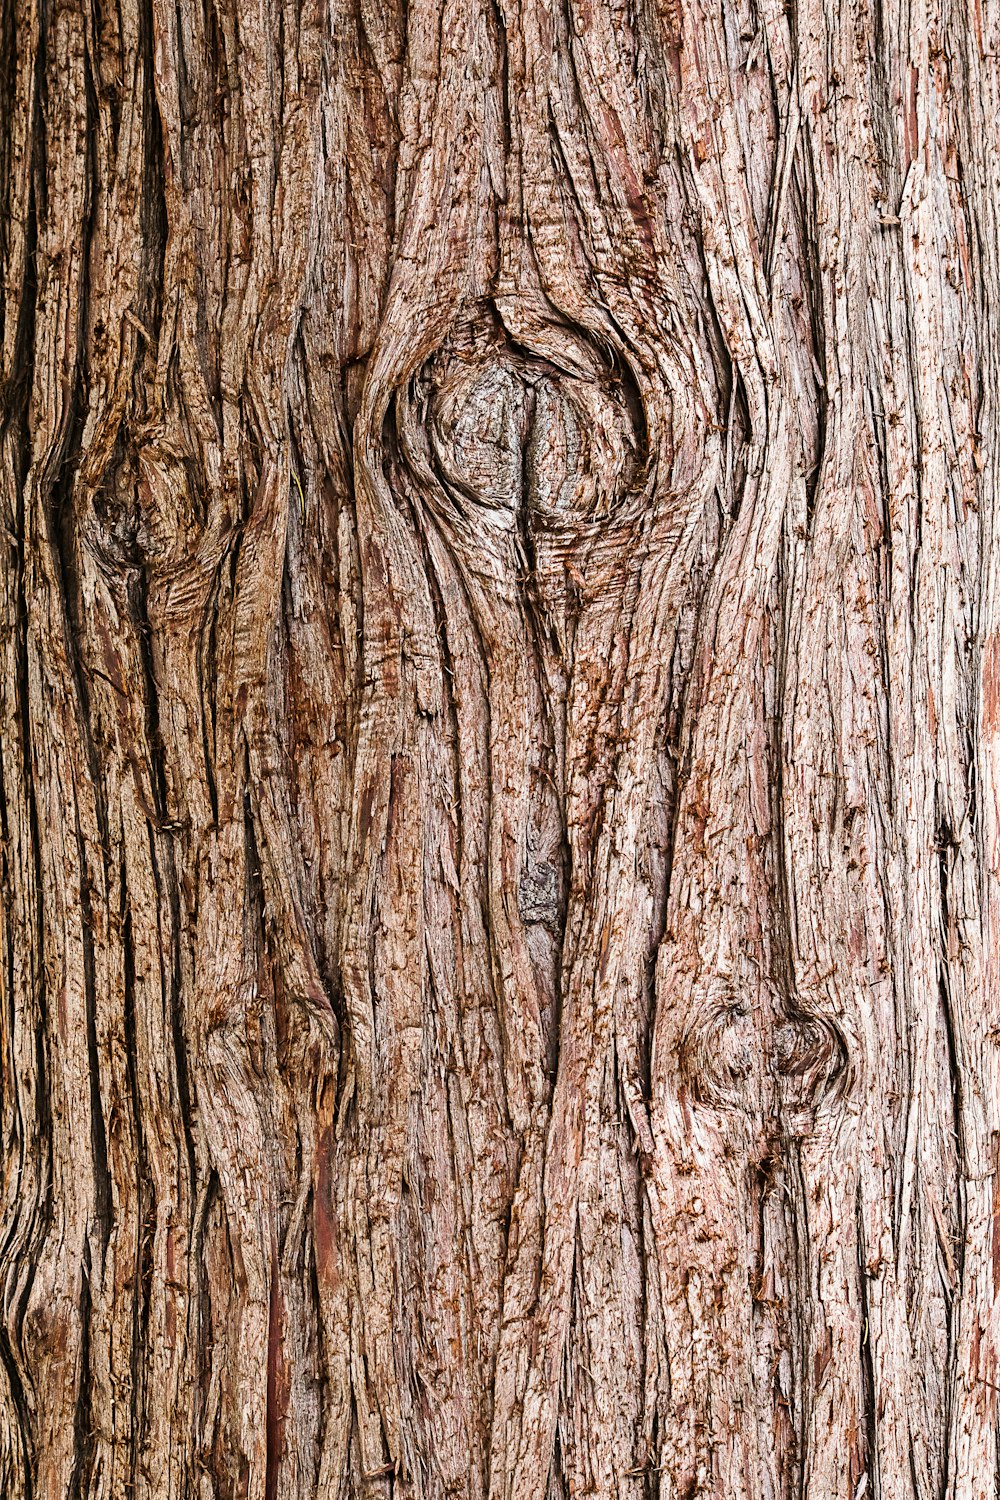 tronco de árbol marrón en fotografía de cerca